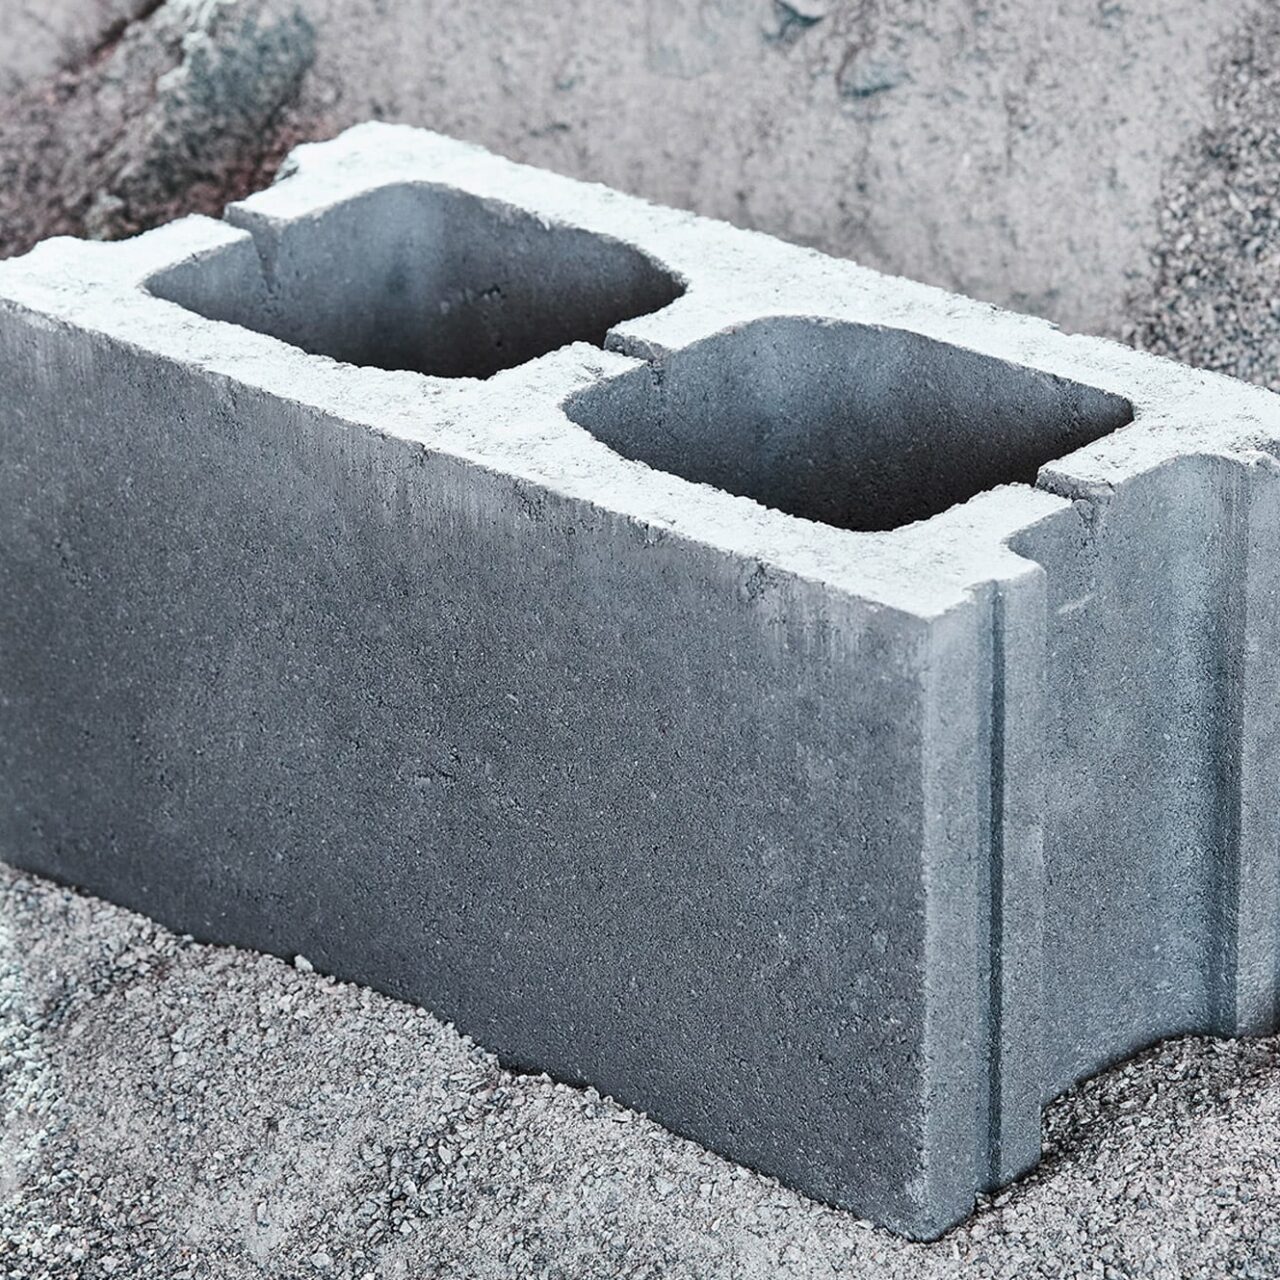 carbon-neutral-concrete-feature_dezeen_2364_col_1-1